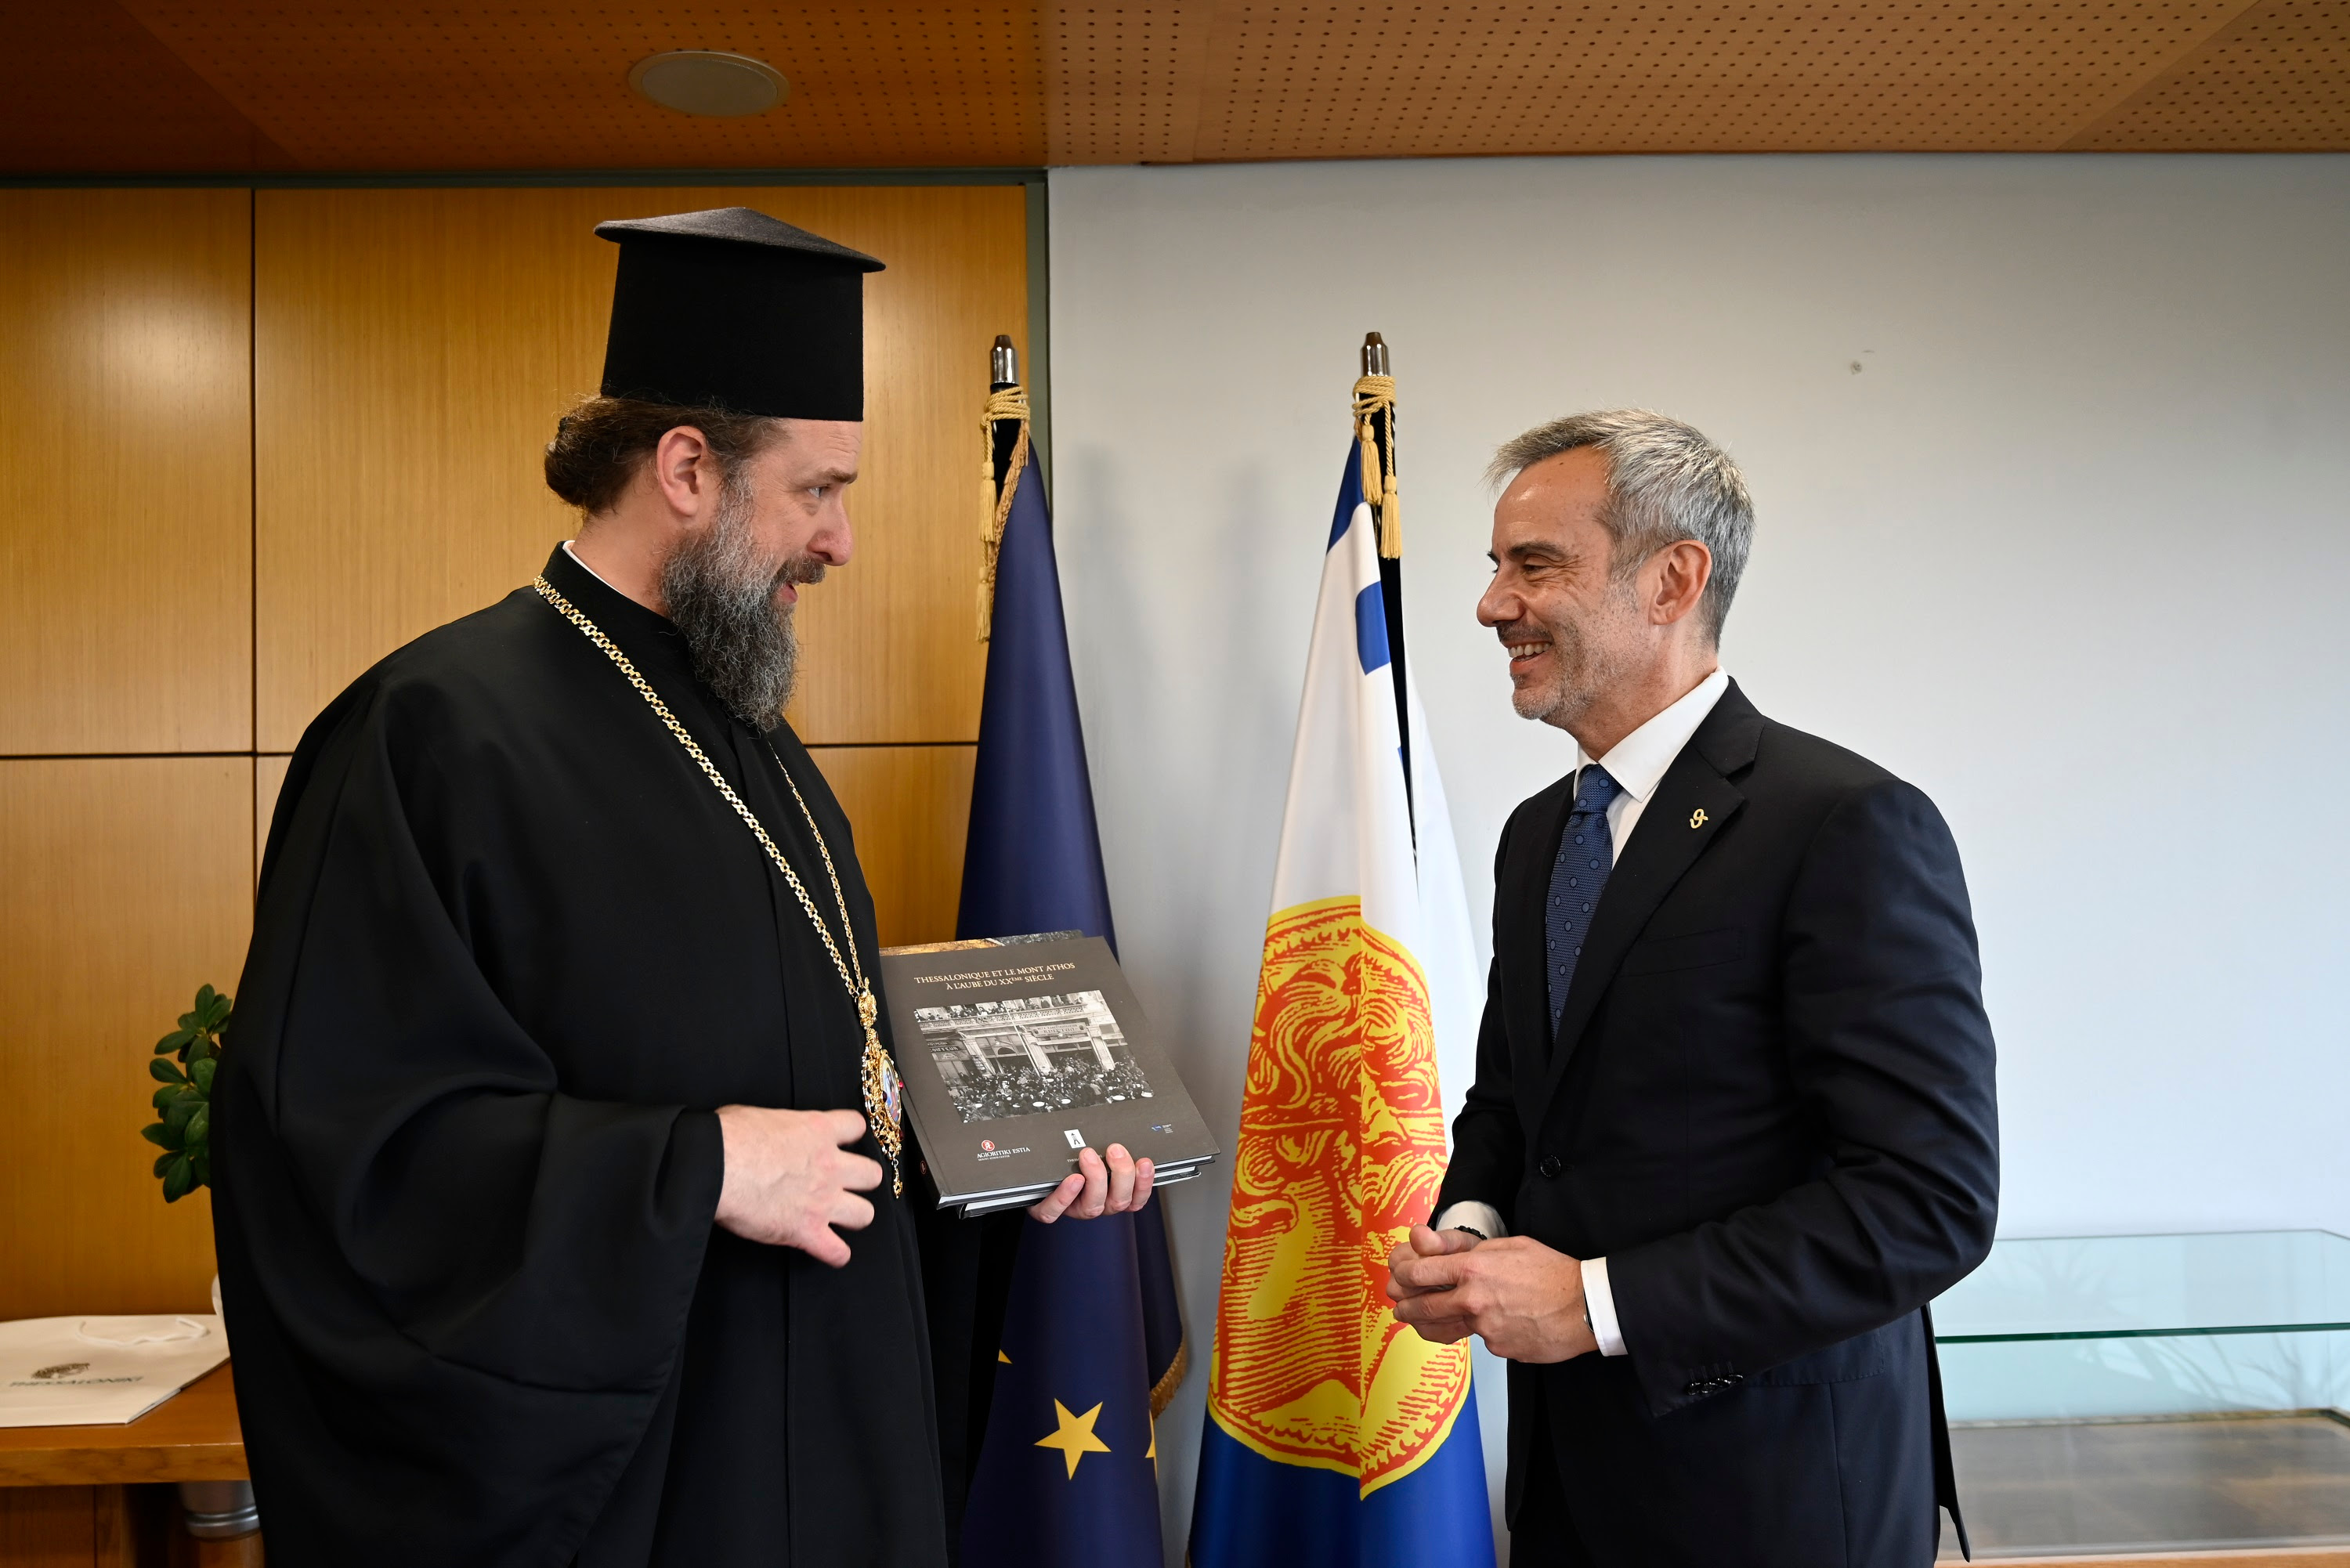 Συνάντηση του Δημάρχου Θεσσαλονίκης Κωνσταντίνου Ζέρβα με τον νέο Μητροπολίτη Θεσσαλονίκης Φιλόθεο